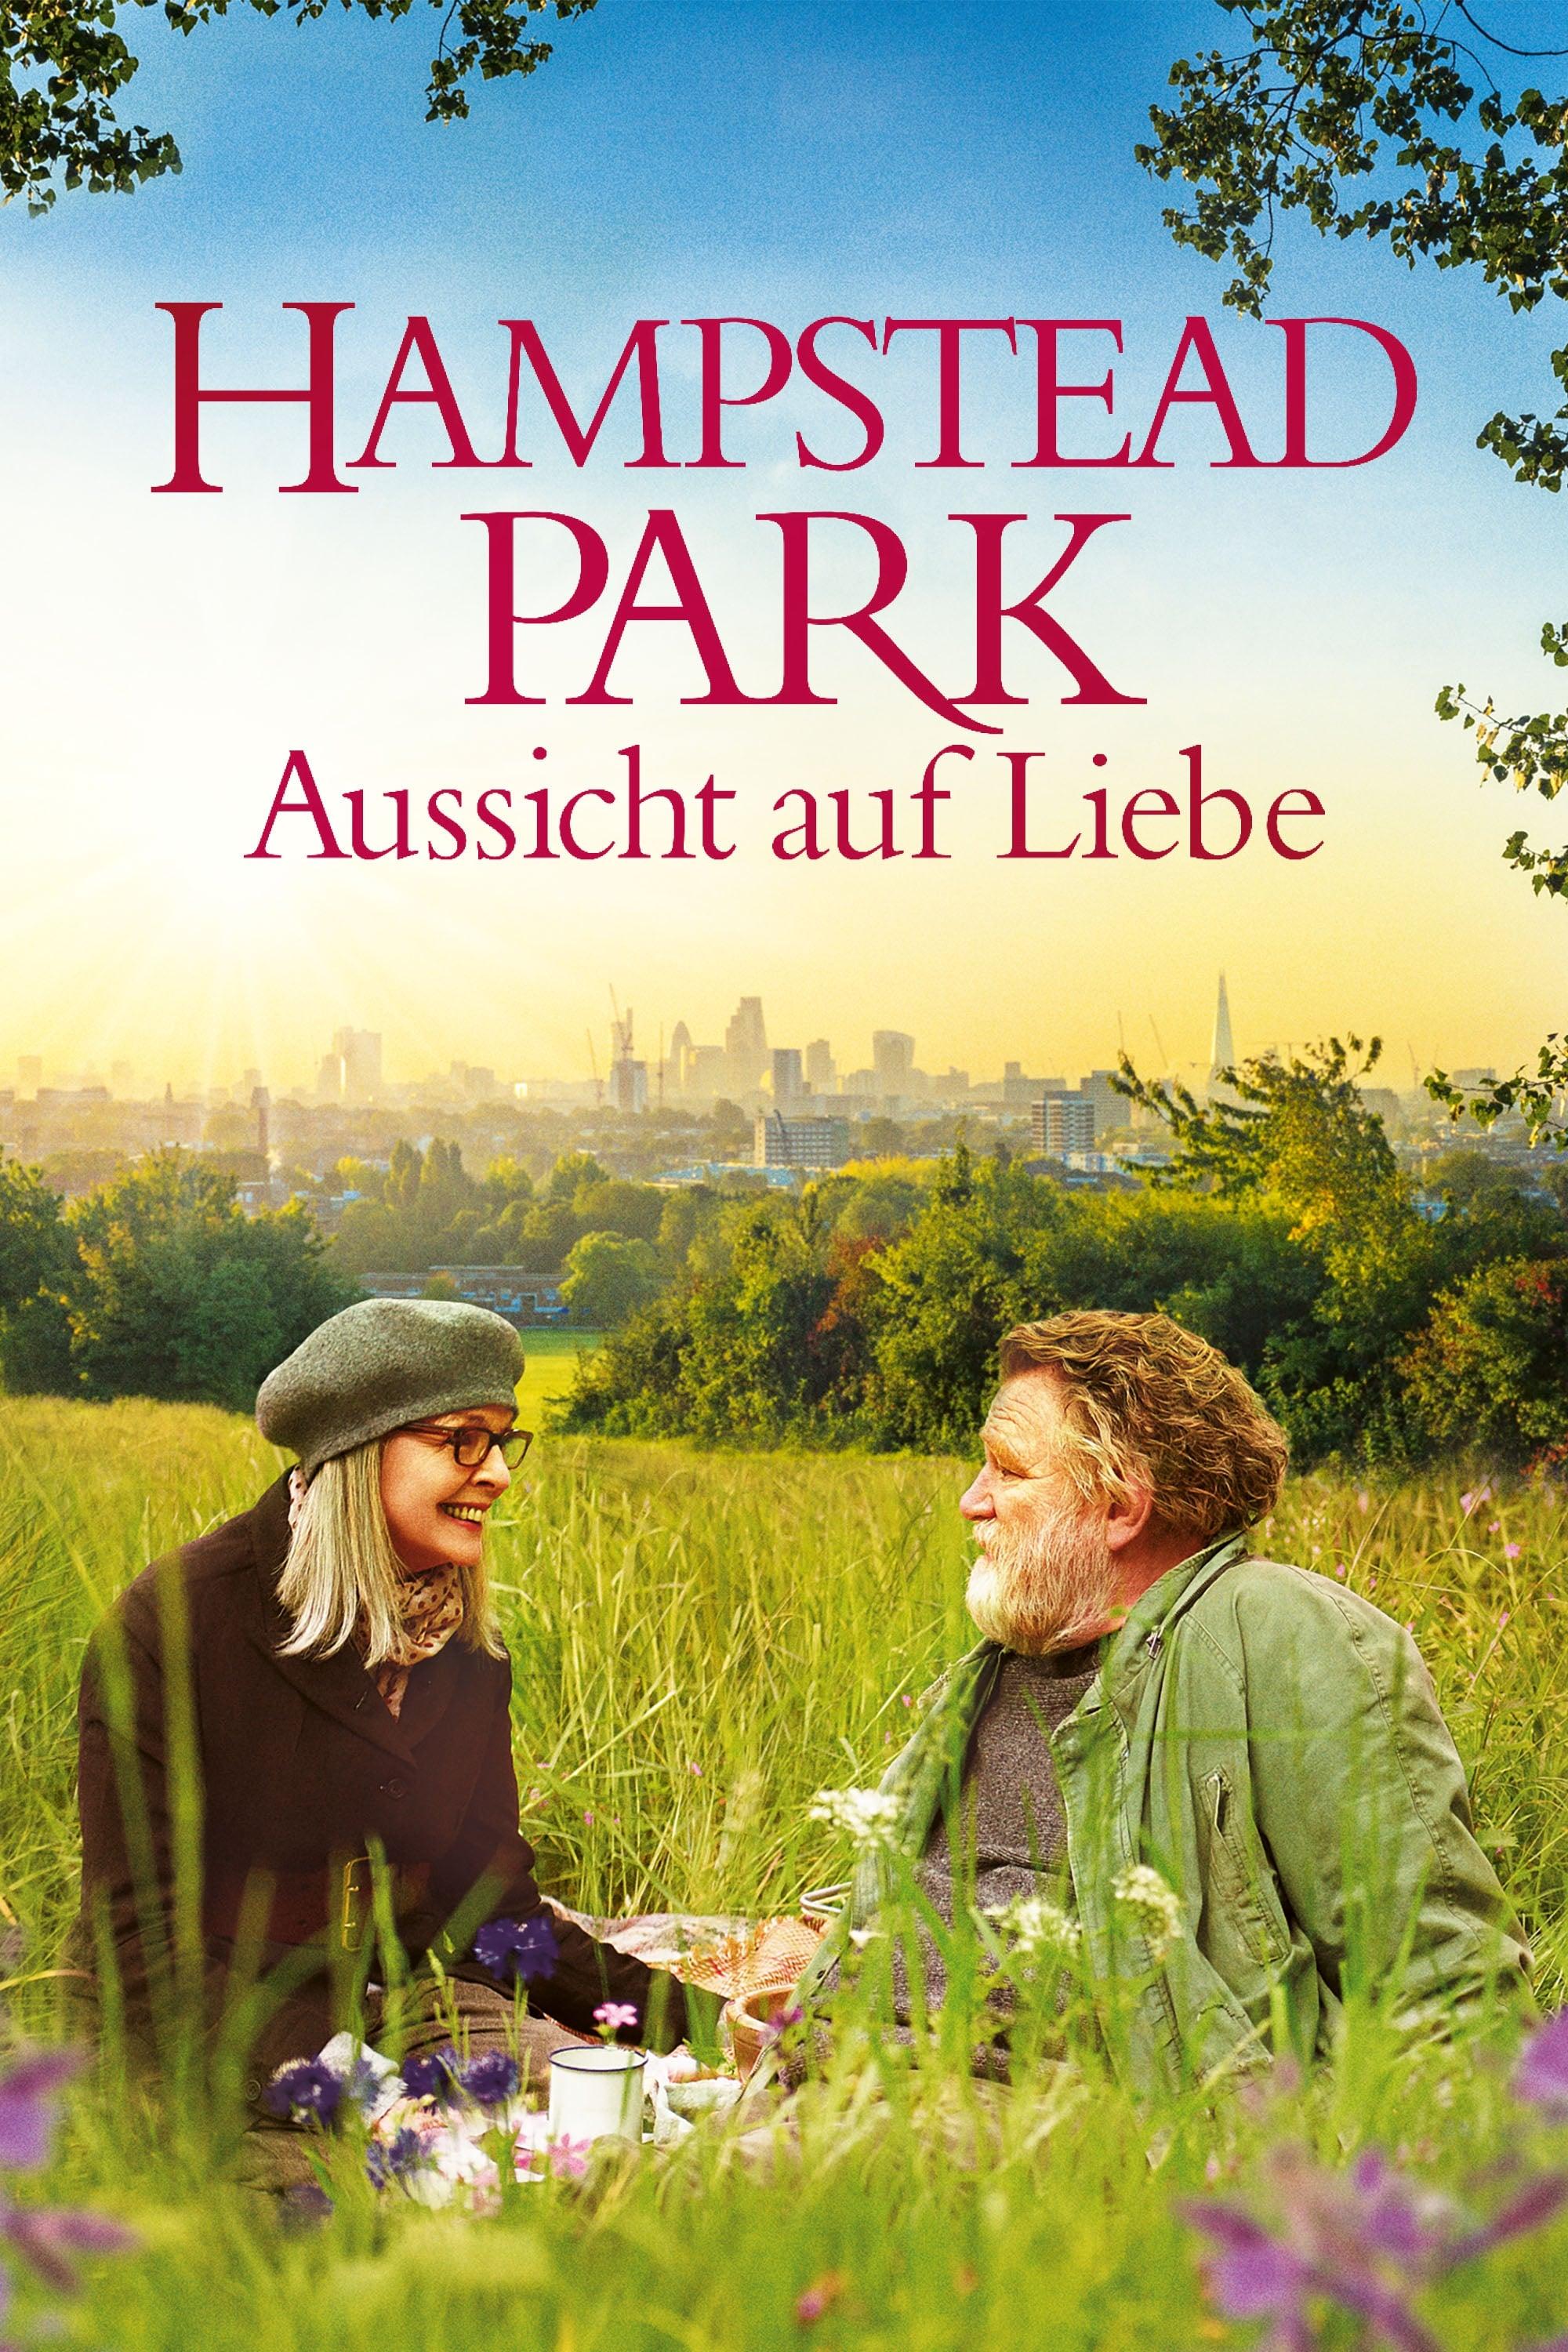 Hampstead Park - Aussicht auf Liebe poster